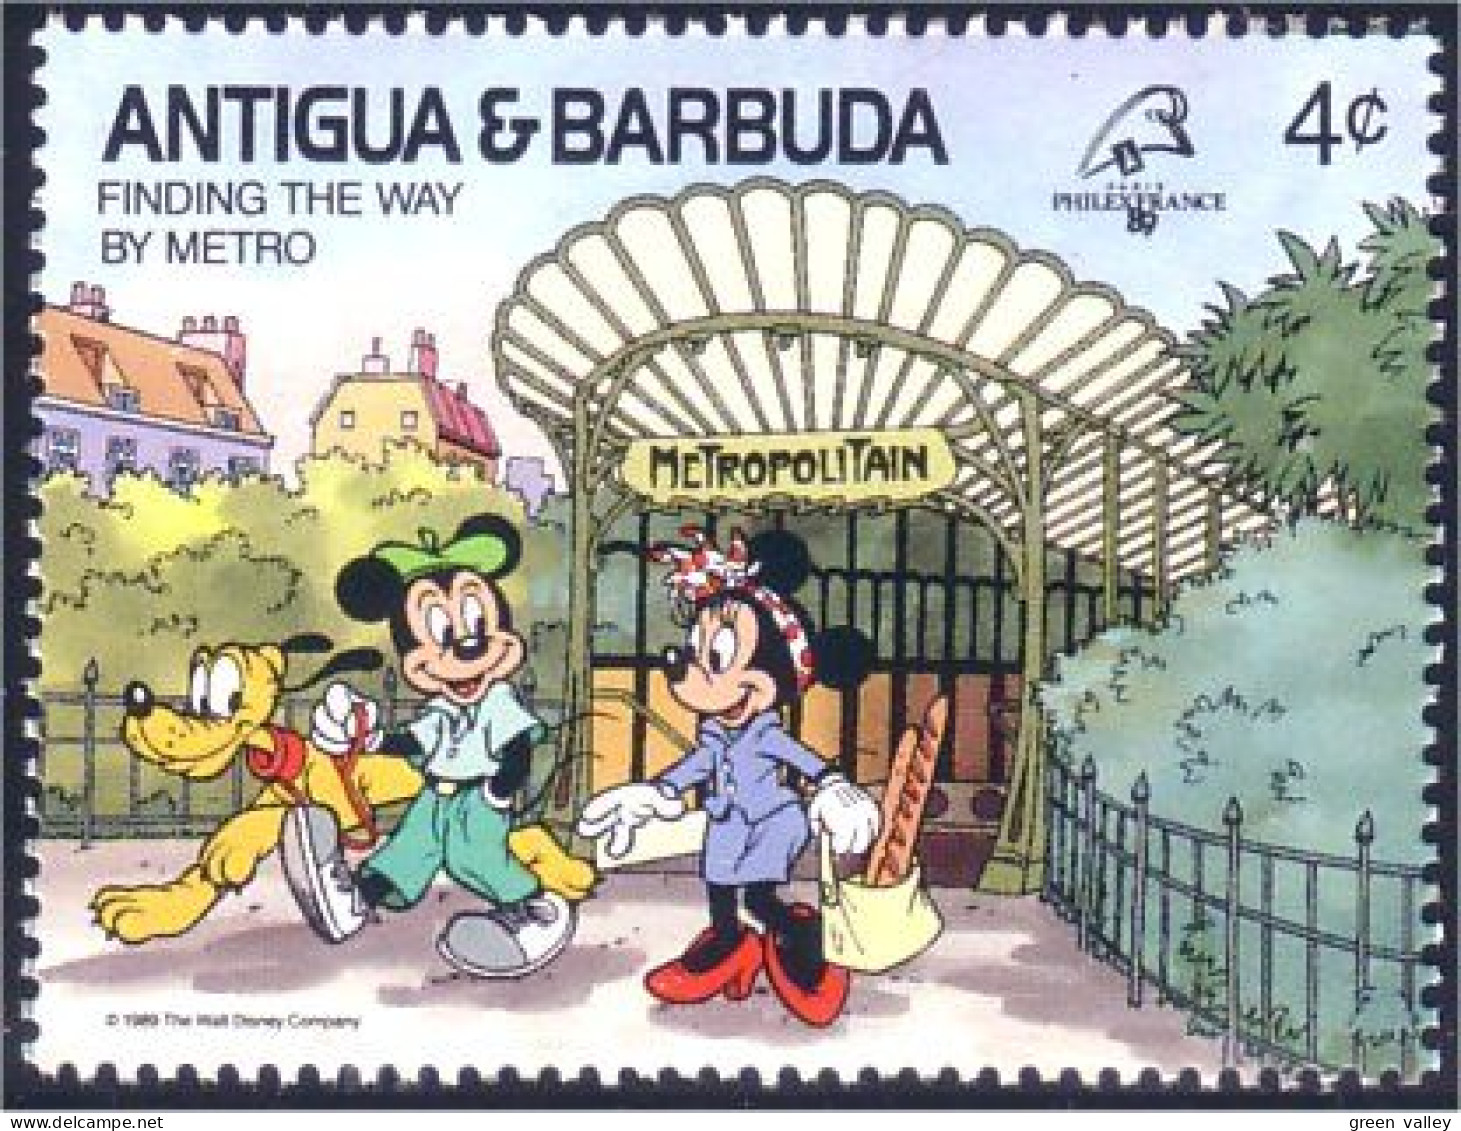 143 Barbuda Antigua Pluto Metro Paris Mickey Minnie MNH ** Neuf SC (ABB-16b) - Tram